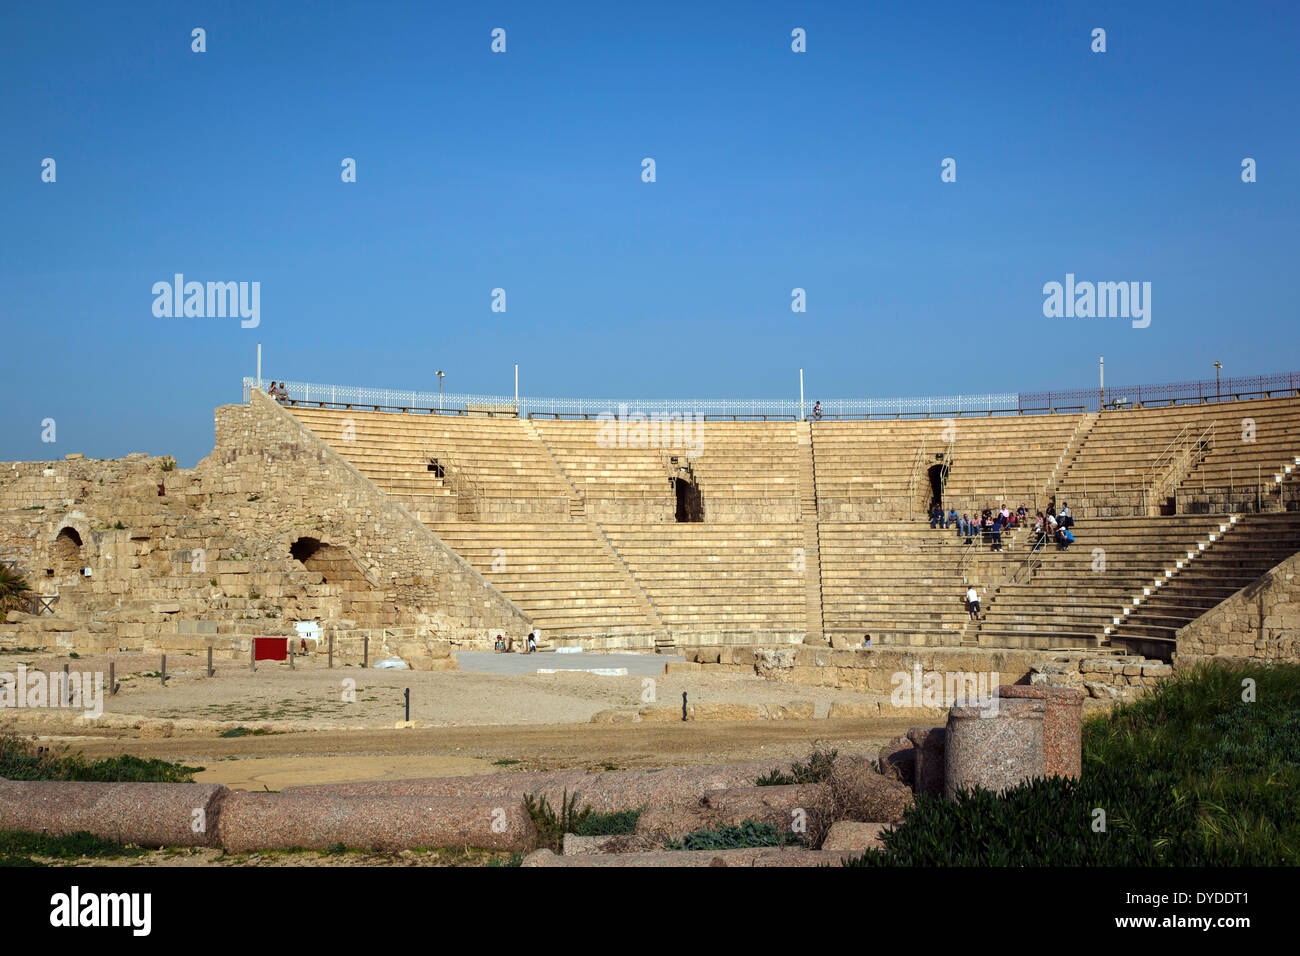 The Roman amphitheater, Caesarea, Israel. Stock Photo